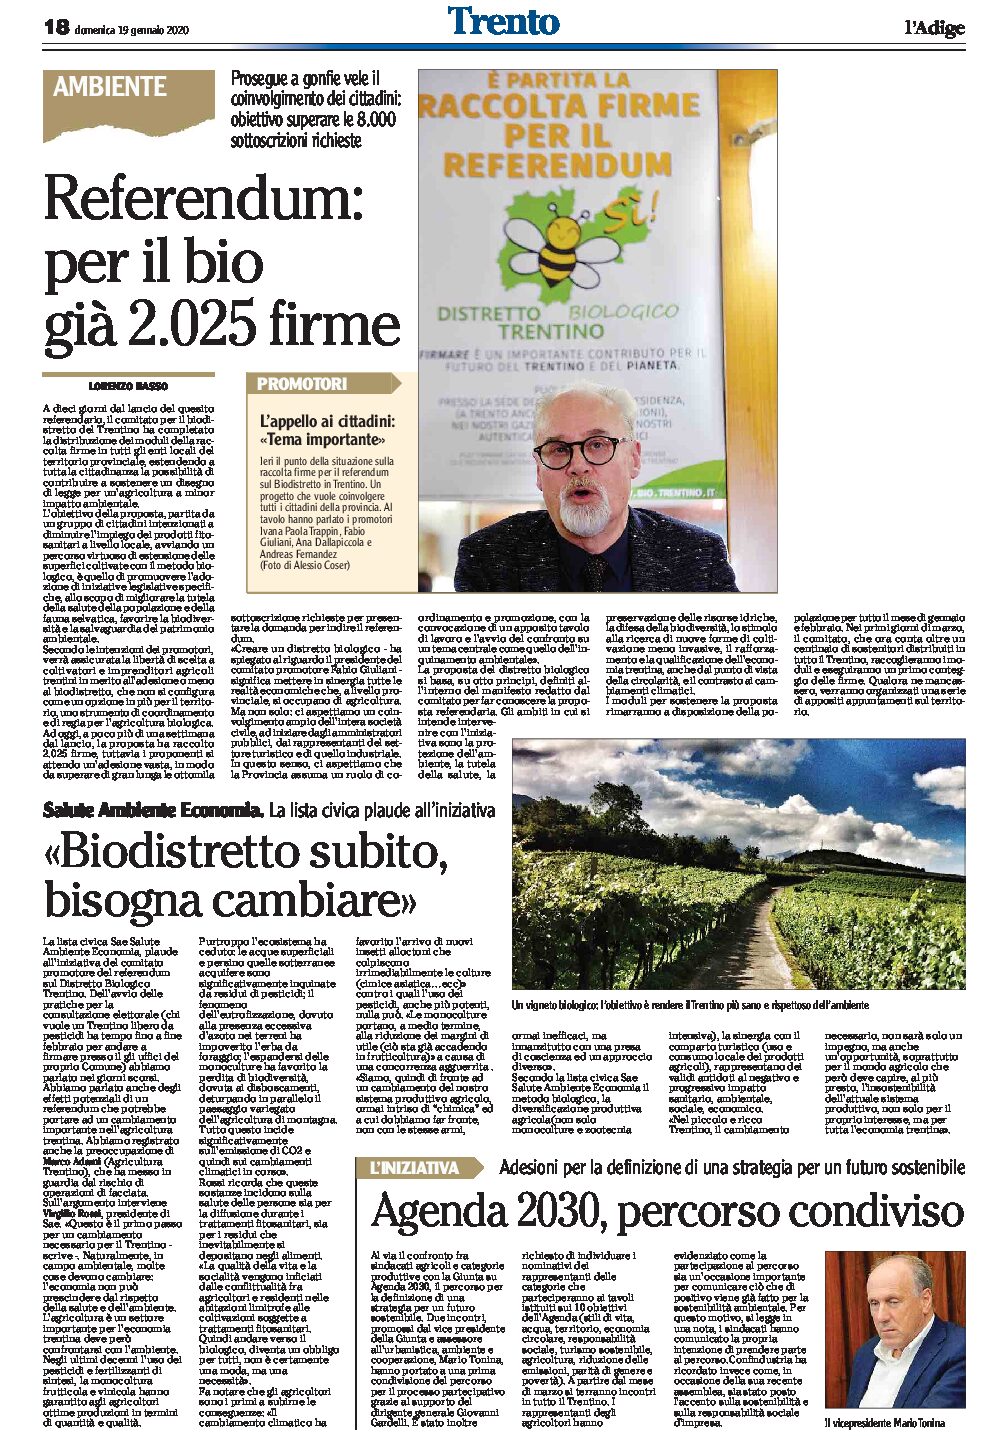 Trentino: biodistretto subito. Per il referendum già raccolte 2.050 firme: obiettivo superare le 8.000